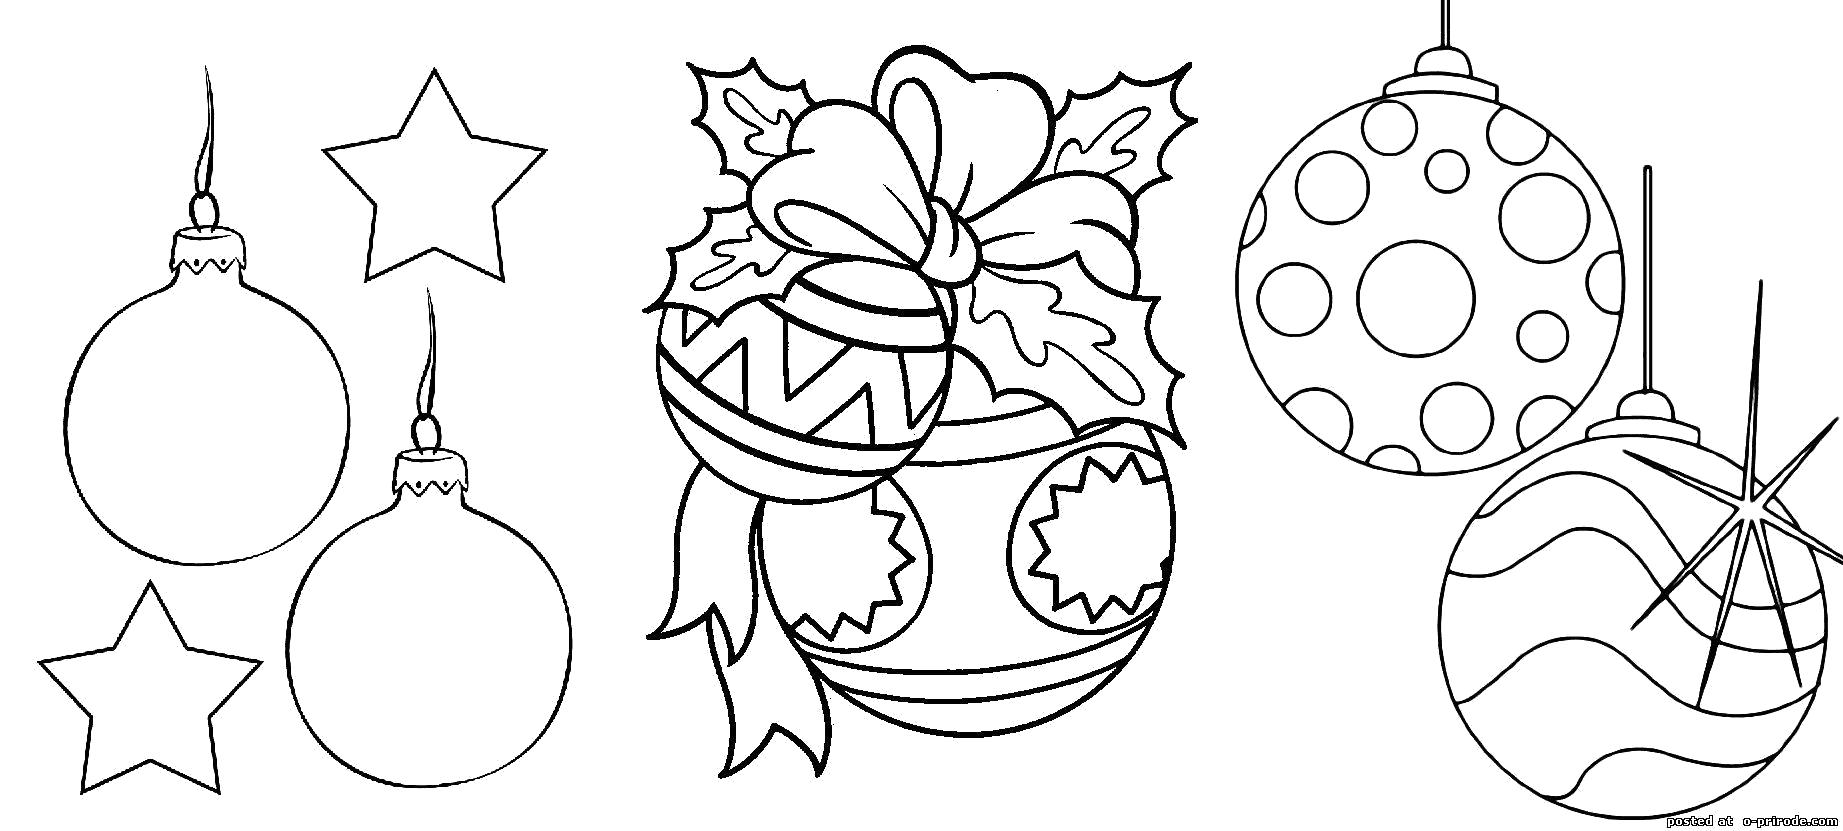 Раскраска Новогодние шары в полосочку и кружочки распечатать бесплатно